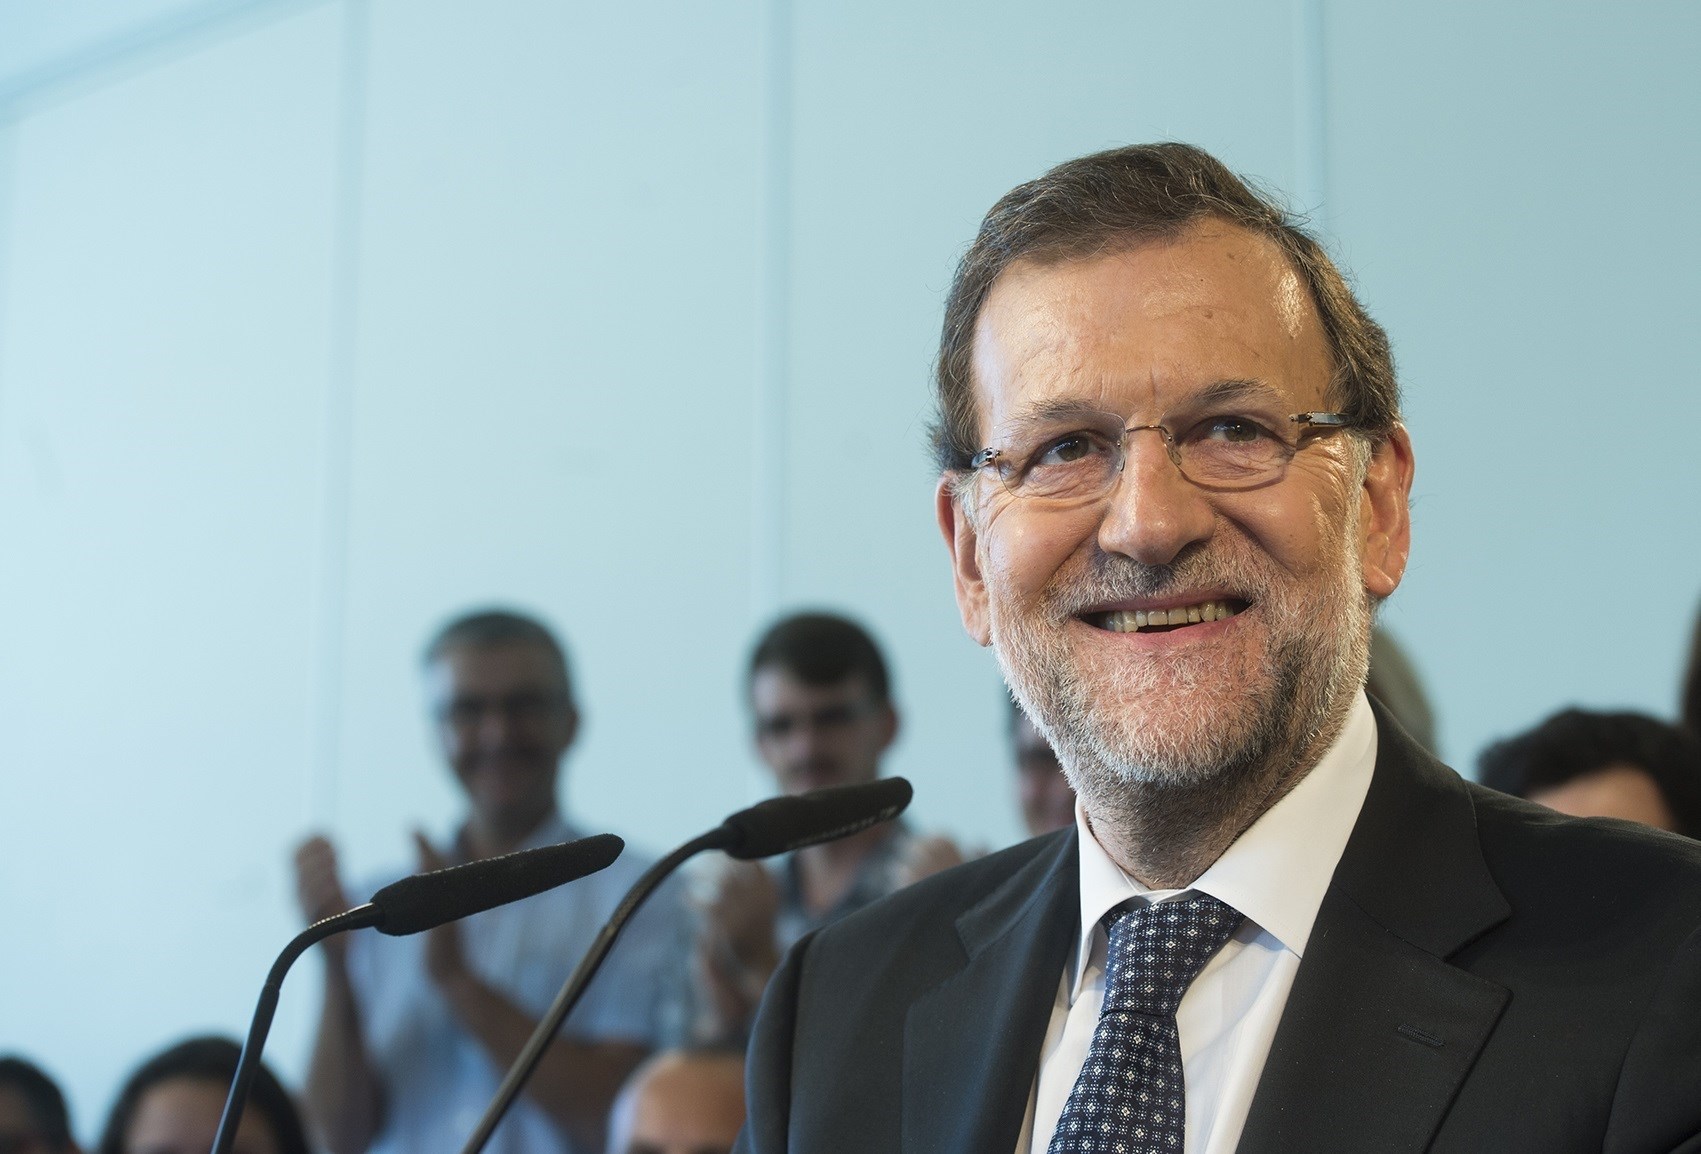 Mariano Rajoy durante una intervención pública | FOTO: DAVID MUDARRA